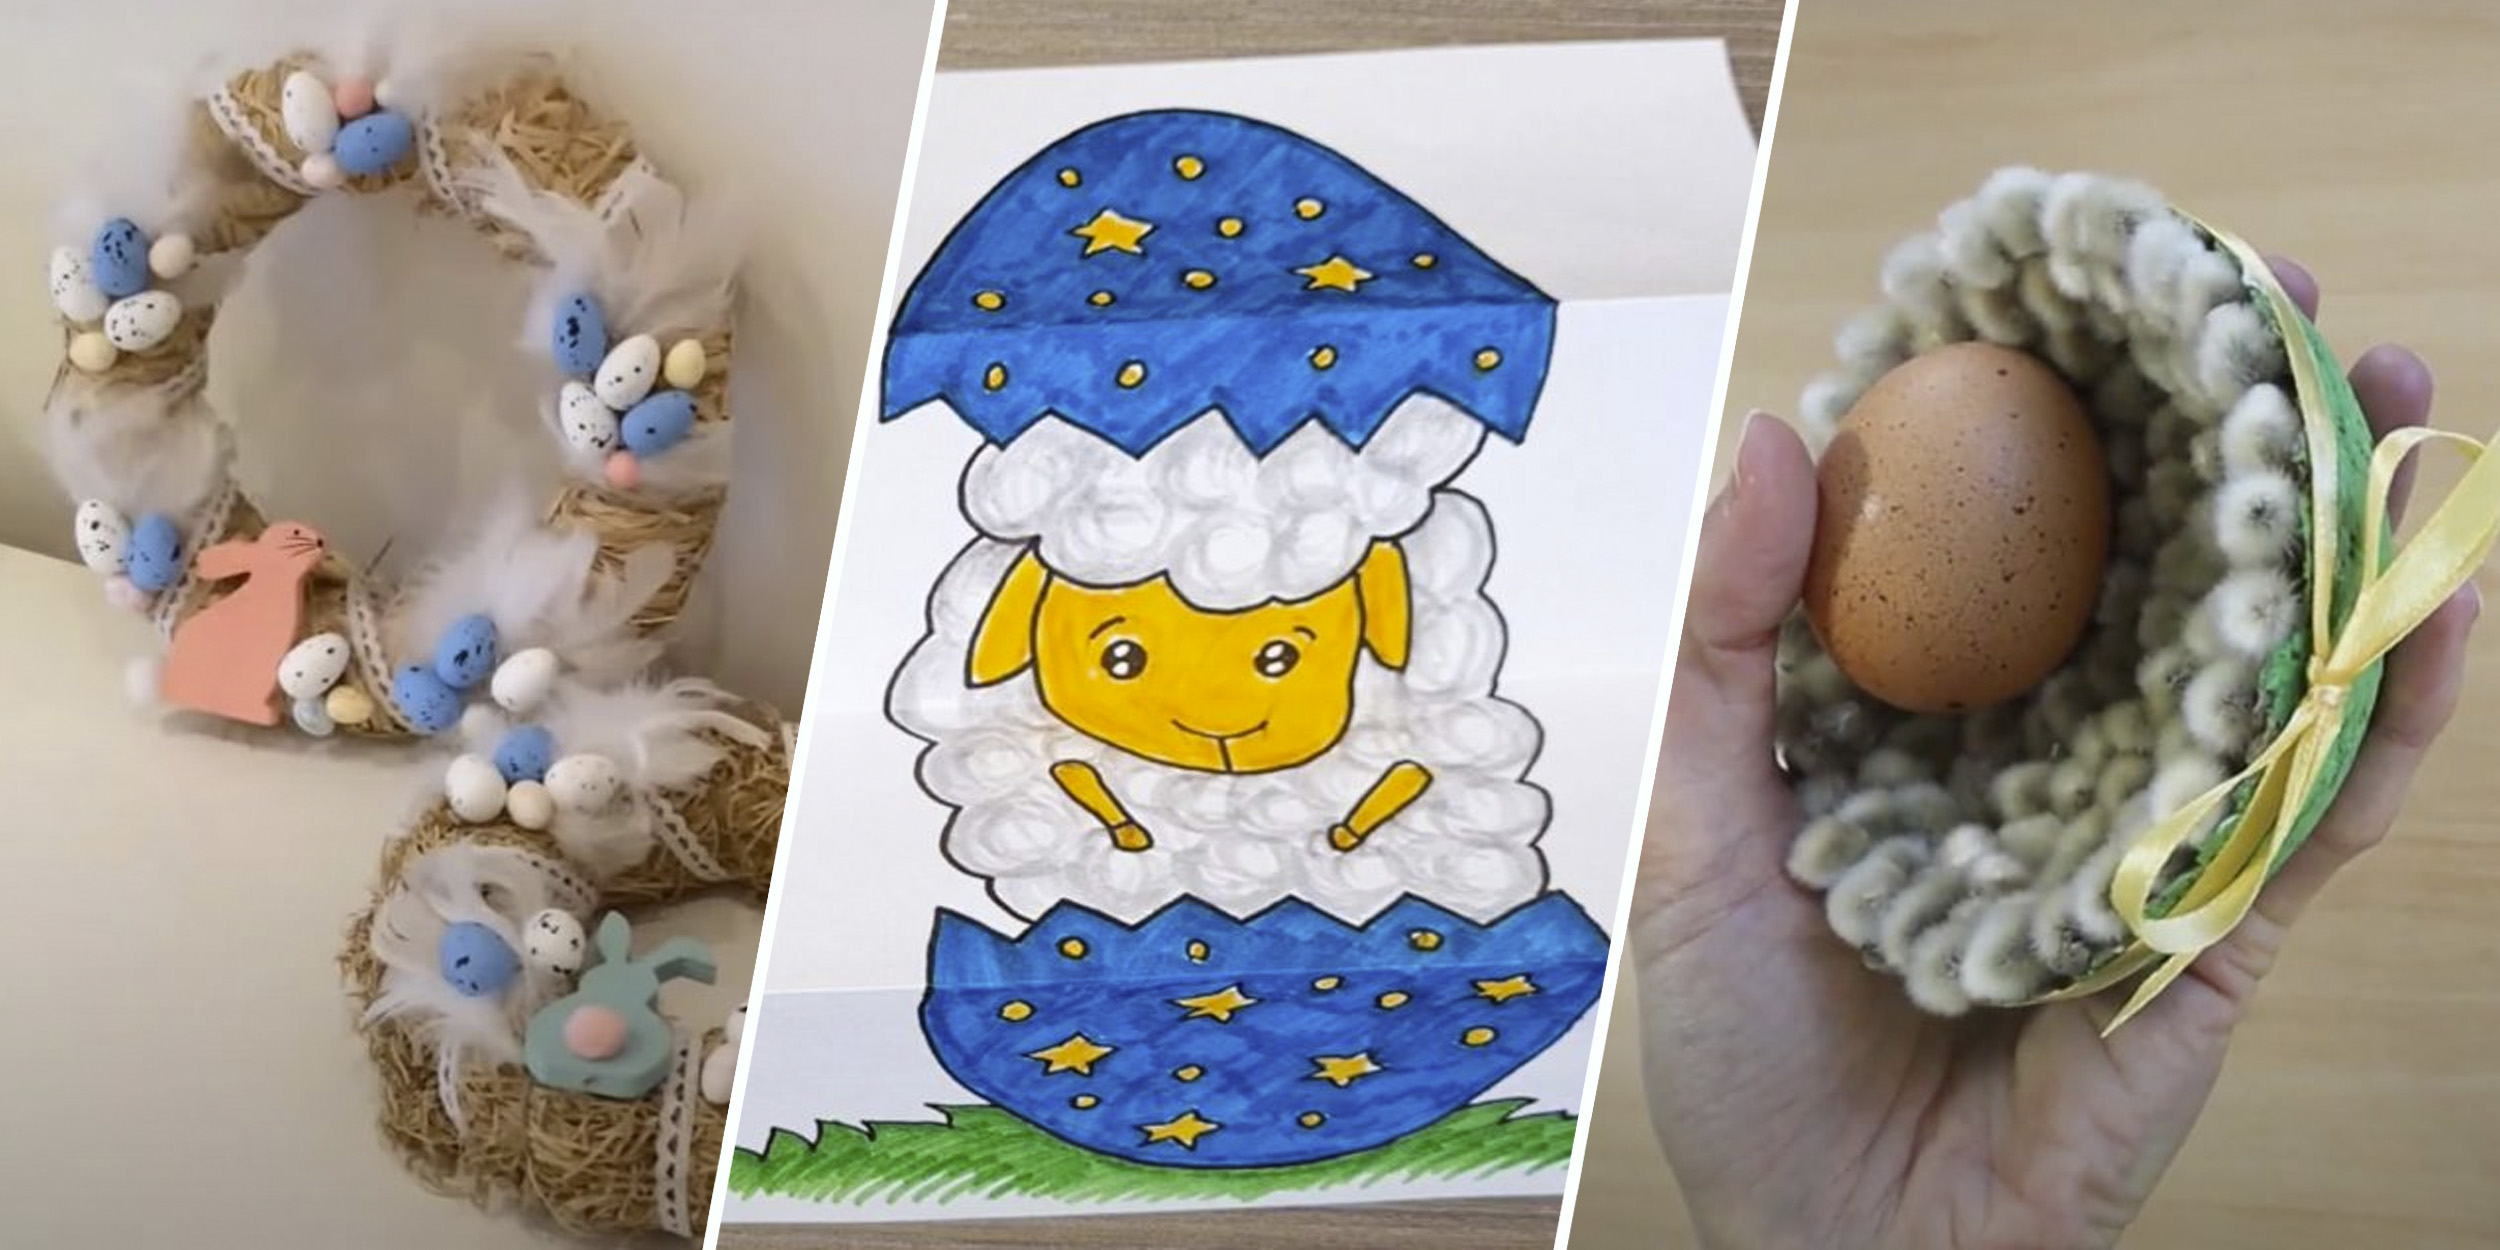 Пасхальное яйцо своими руками: лучшие и оригинальные фото идеи для украшения